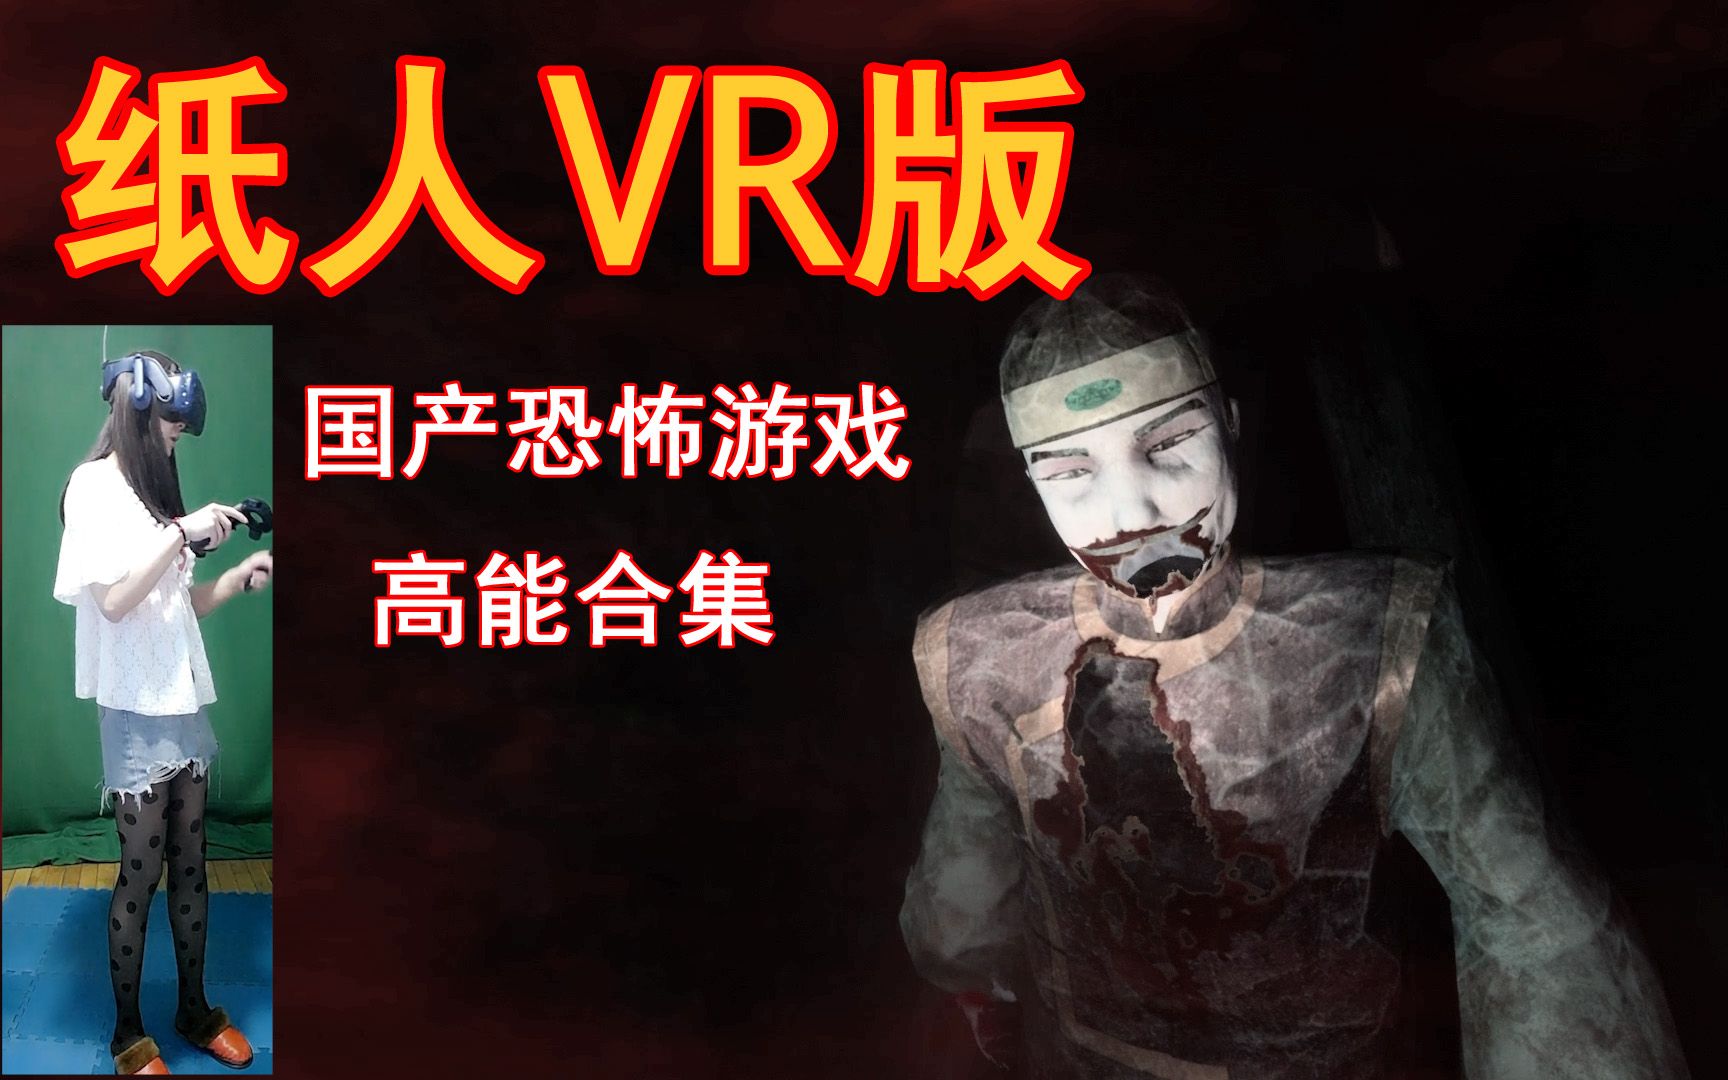 VR恐怖游戏《纸人》国产恐怖游戏实况试玩解说